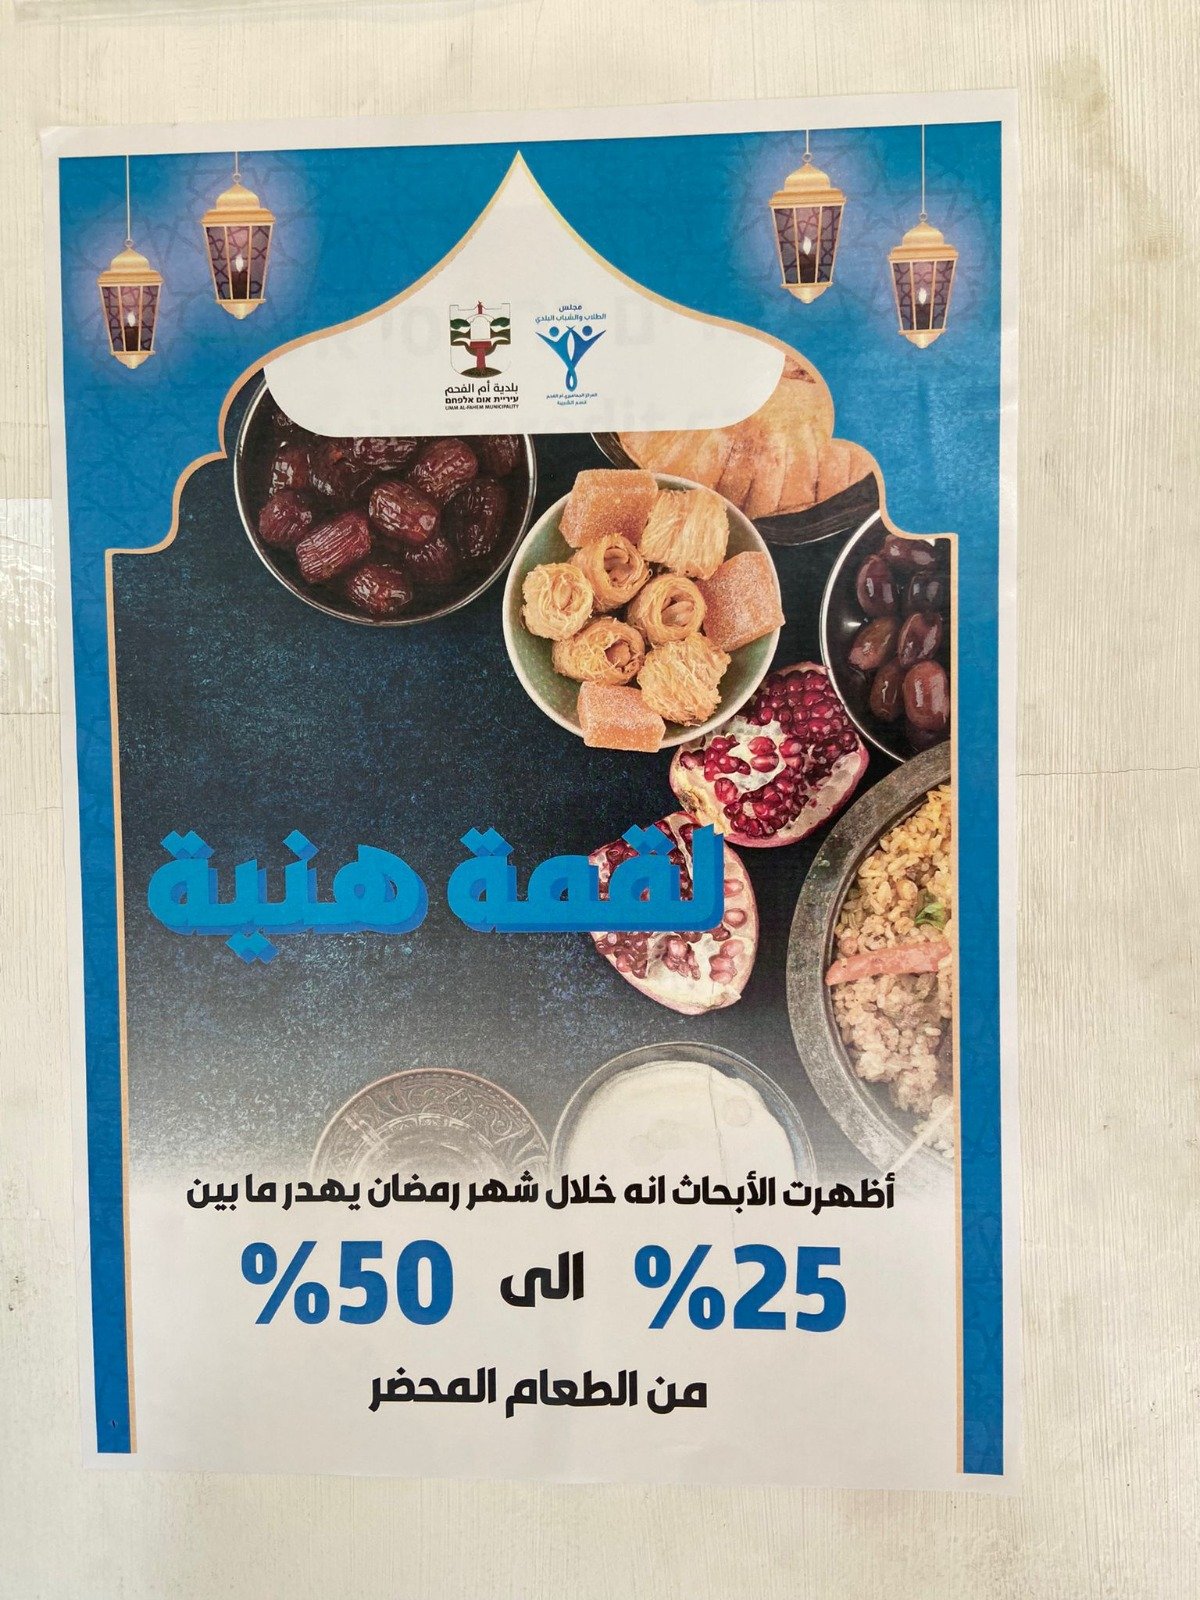 "لقمة هنية" للحد من هدر الطعام في رمضان – بمبادرة مجلس الطلاب والشباب البلدي أم الفحم-1